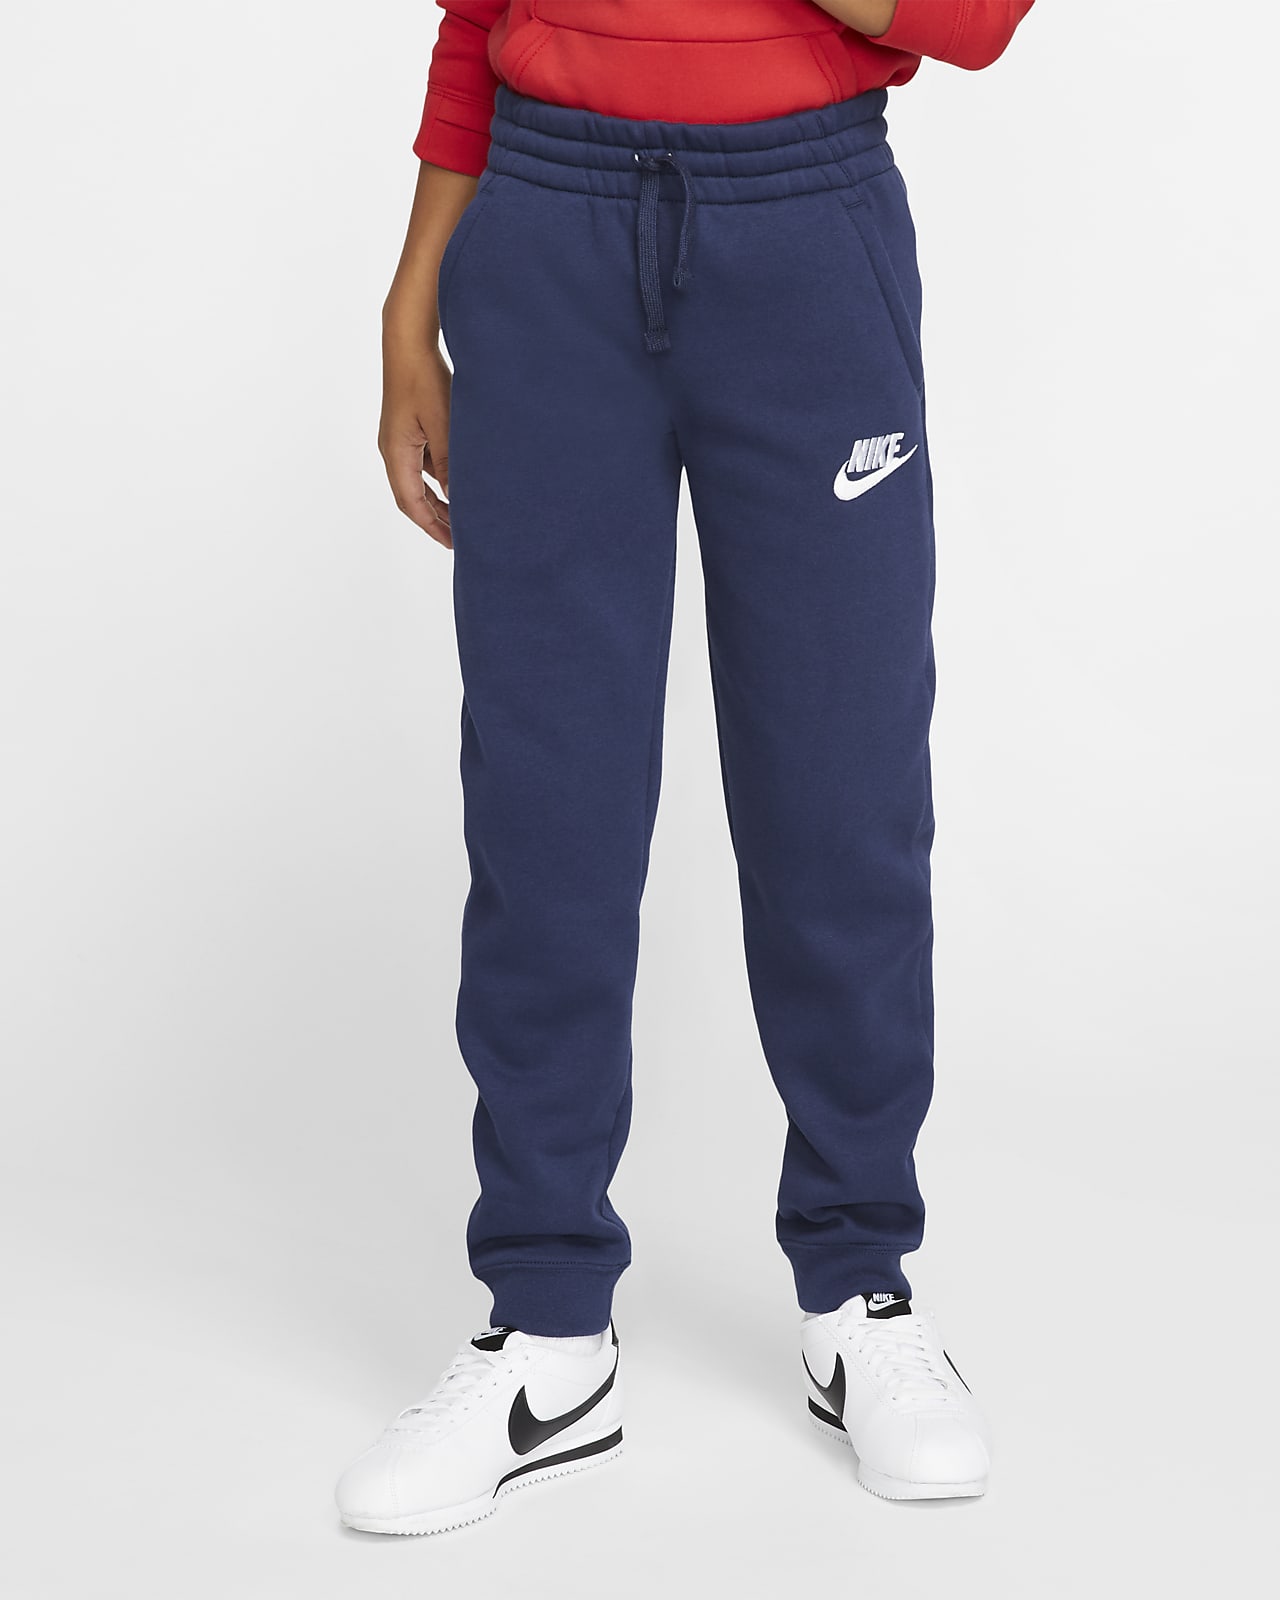 Nike Sportswear Club Fleece Pantalons - Nen/a